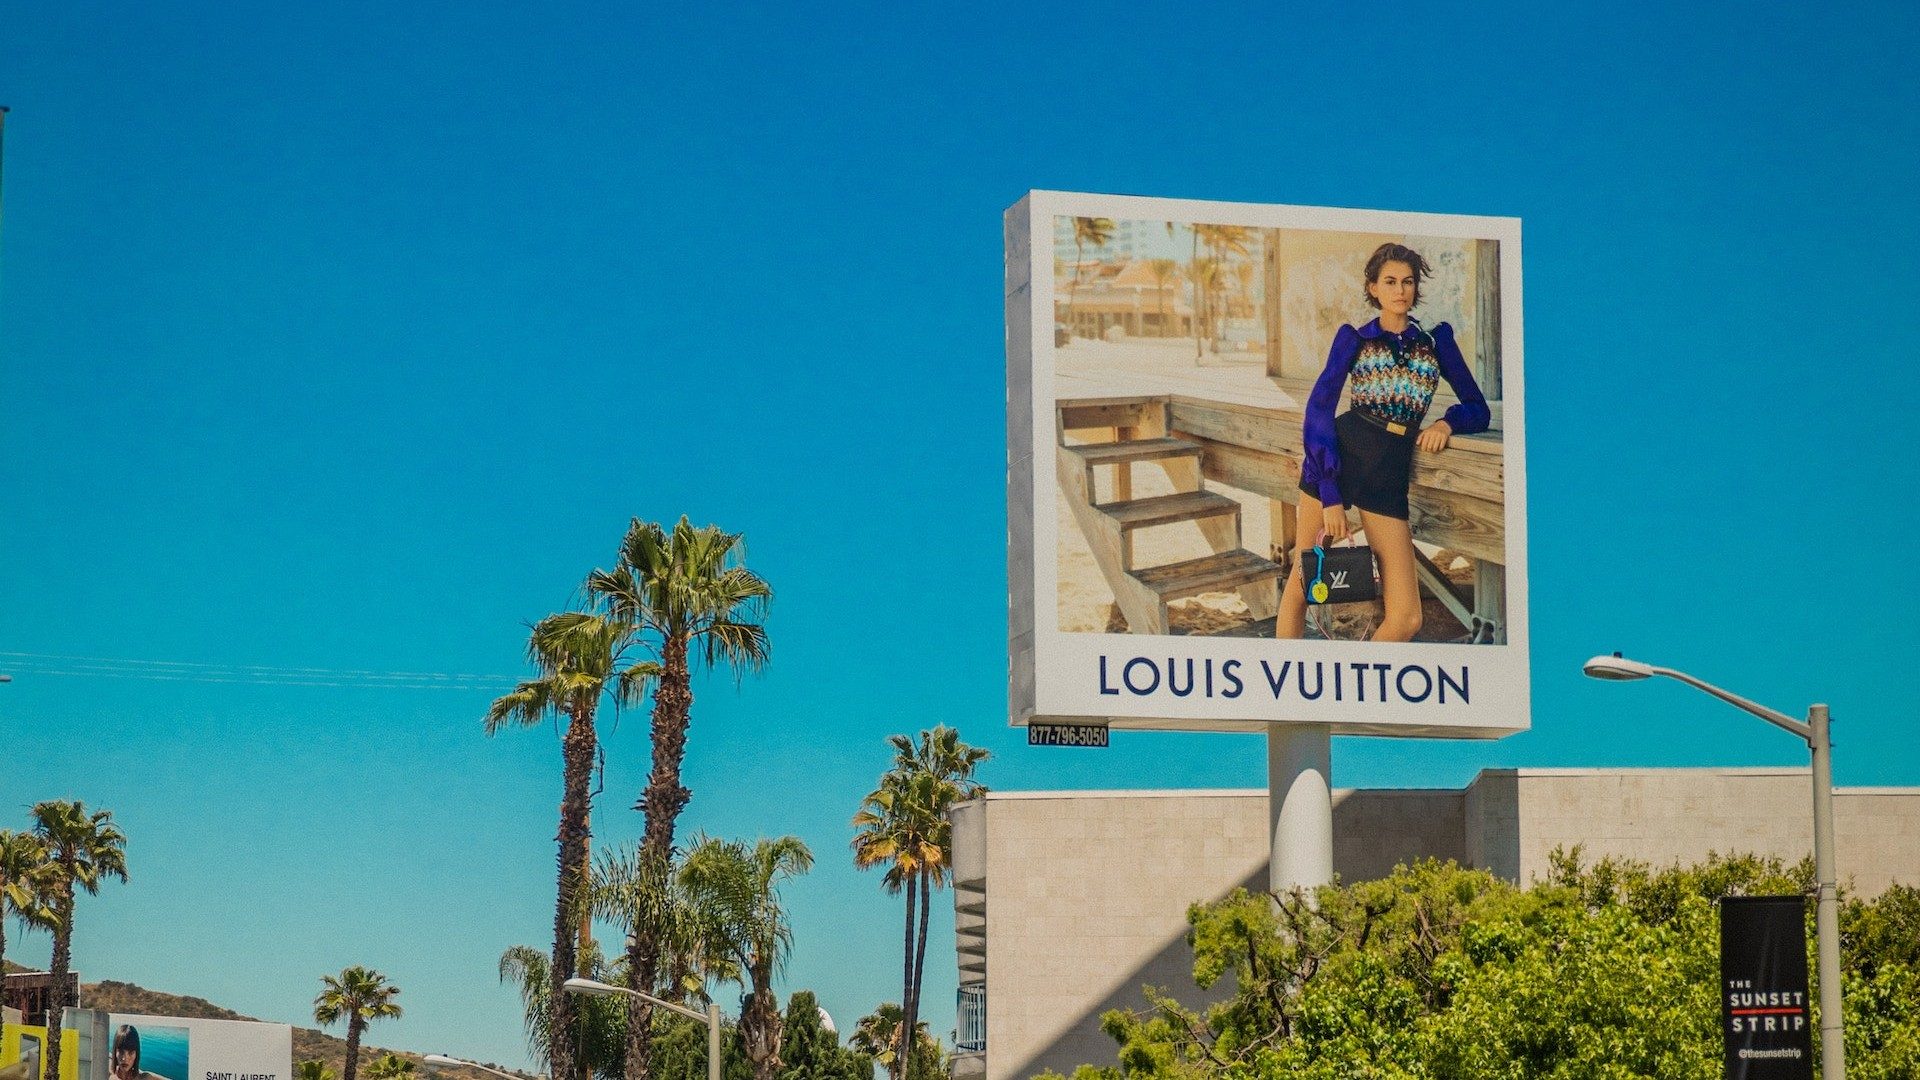 Ein Schild mit der Aufschrift "Louis Vuitton", eine Marke von LVMH, umgeben von Palmen und blauem Himmel